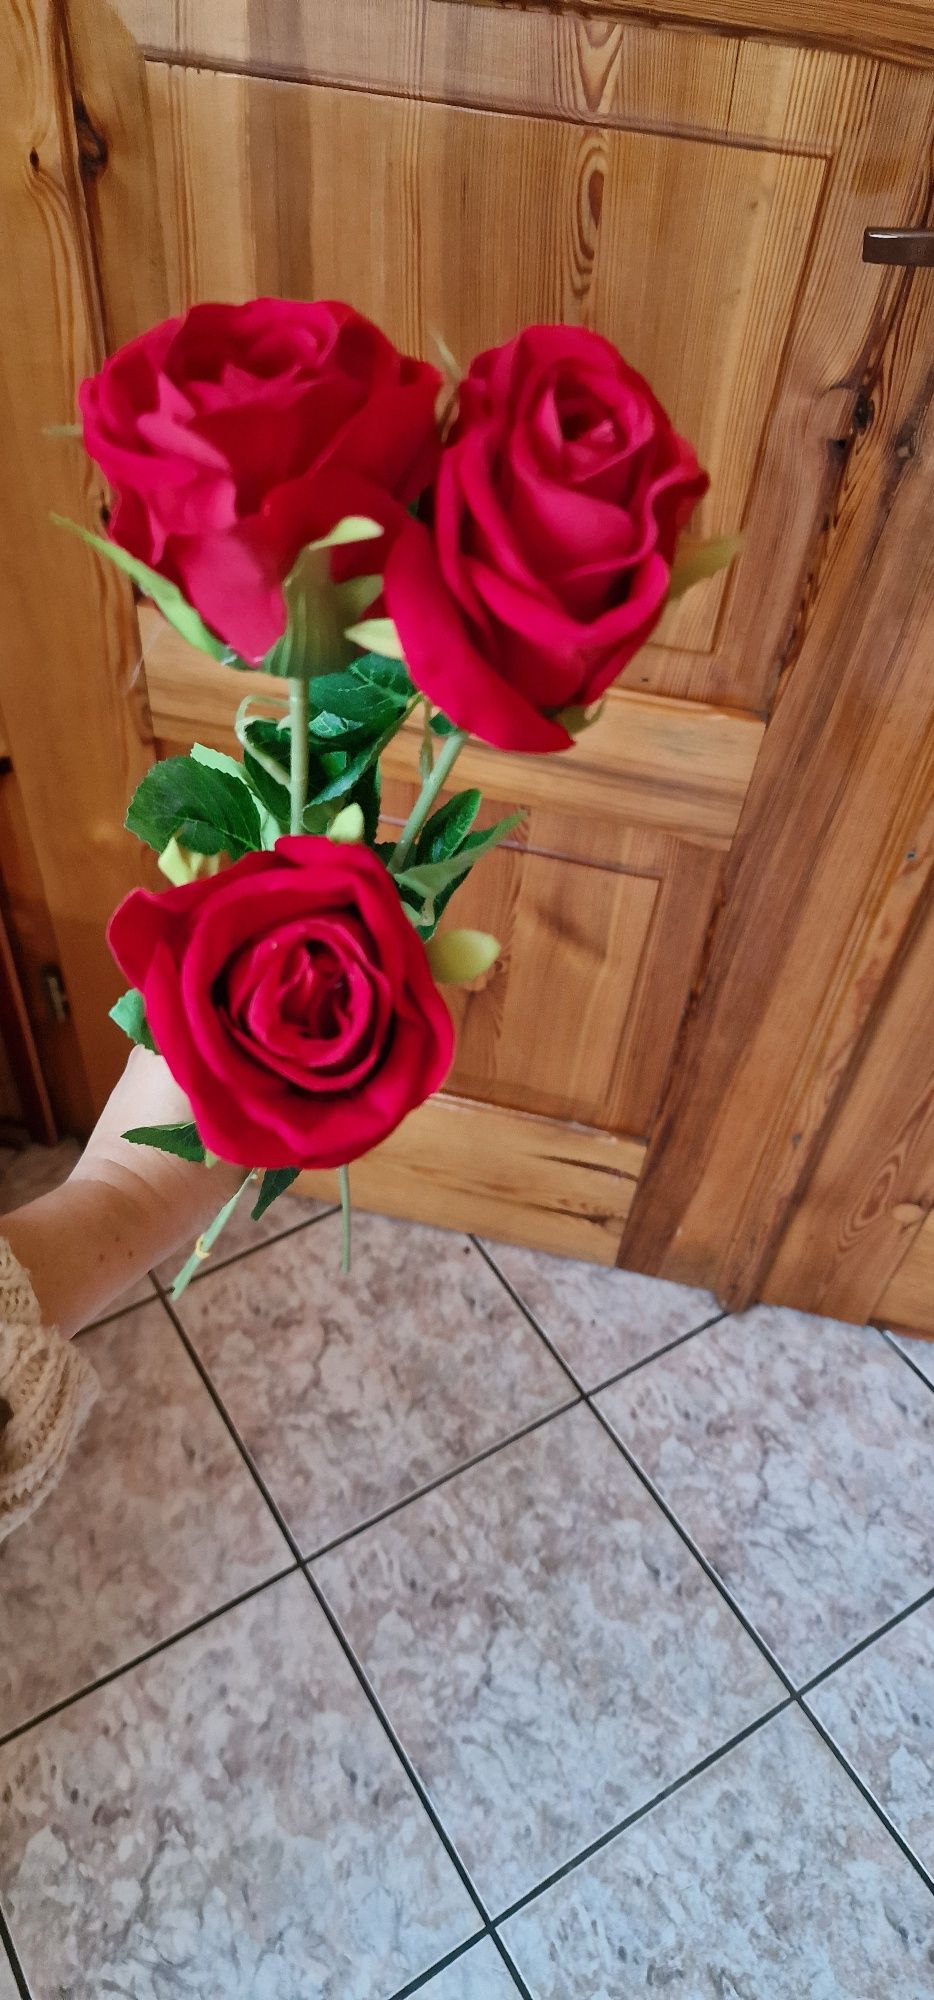 Przepiękna czerwono-bordowa welurowa róża - 3 sztuka 62 cm
Cena dotycz